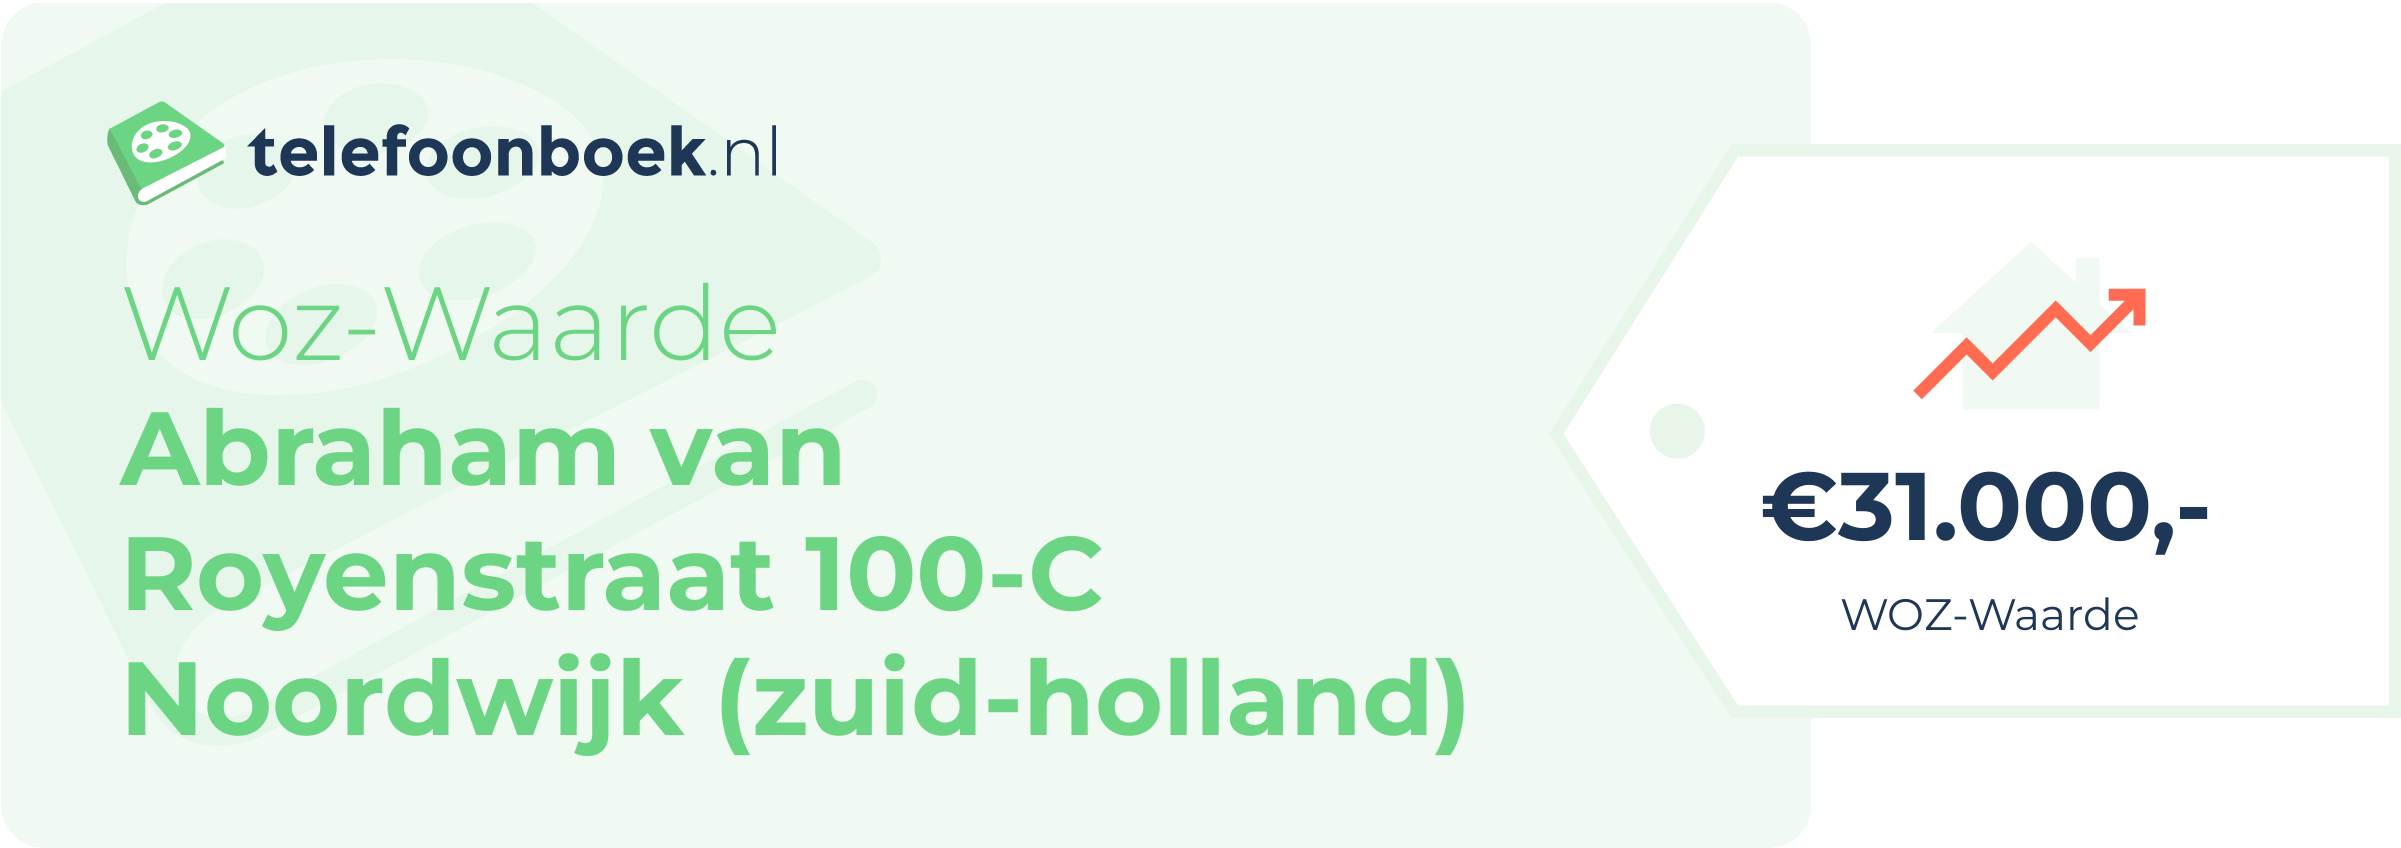 WOZ-waarde Abraham Van Royenstraat 100-C Noordwijk (Zuid-Holland)